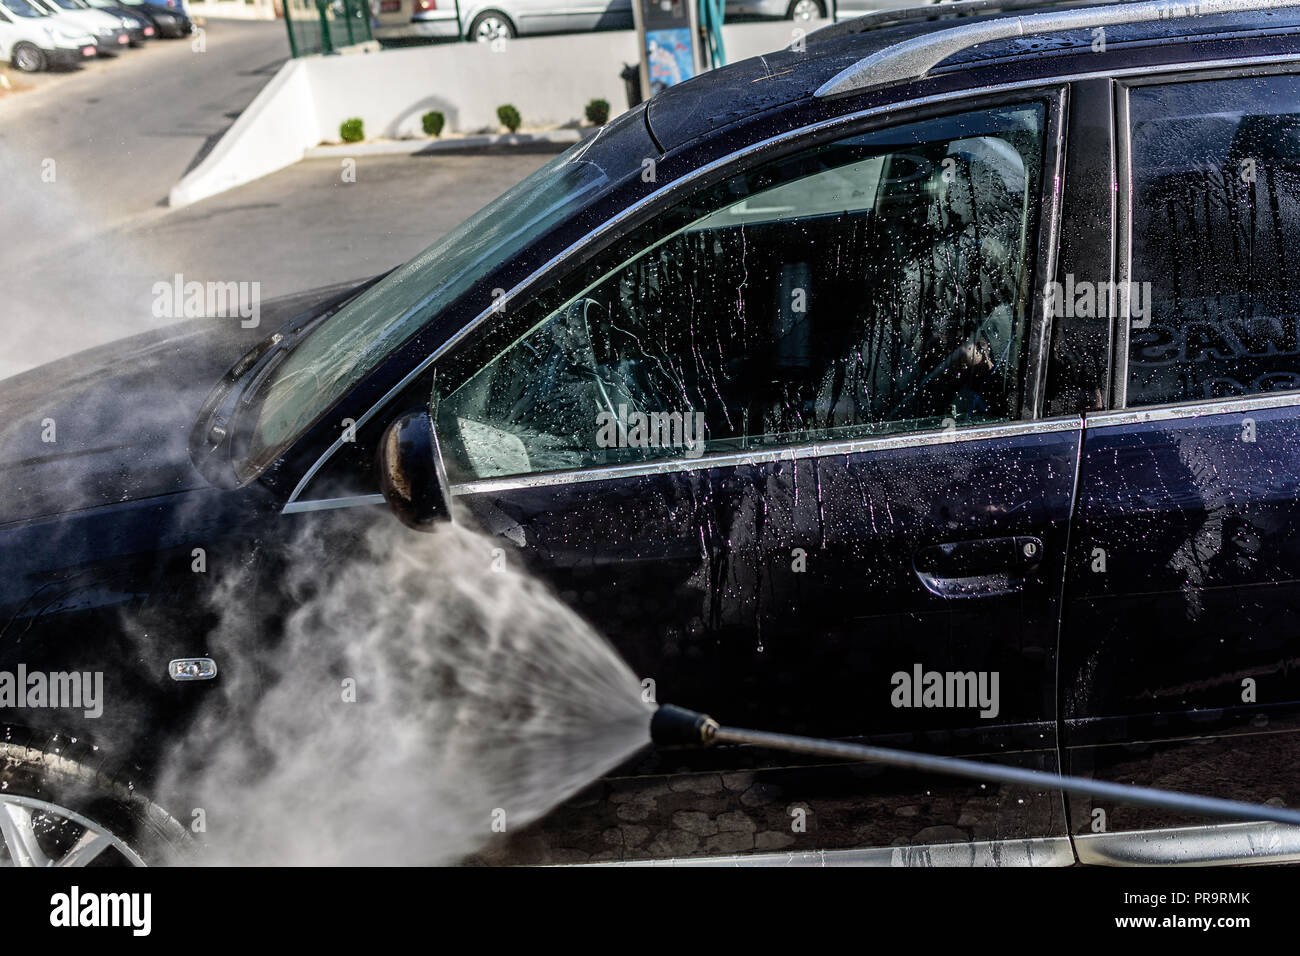 Lavaggio ad alta pressione in auto all'aperto. Auto Audi A6 in una idropulitrice ad alta pressione. Foto Stock